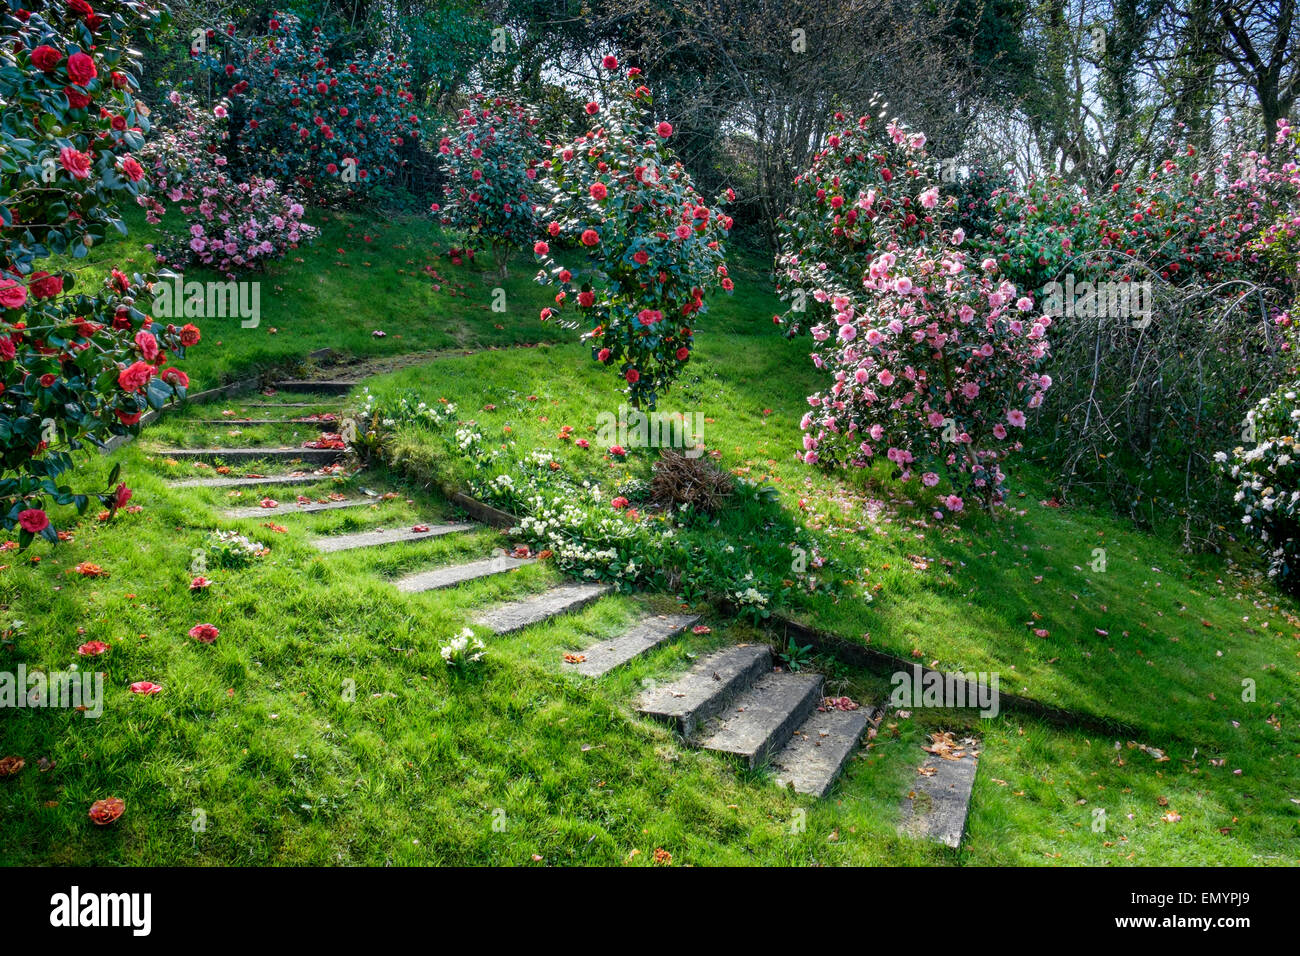 Camellias in a garden Stock Photo